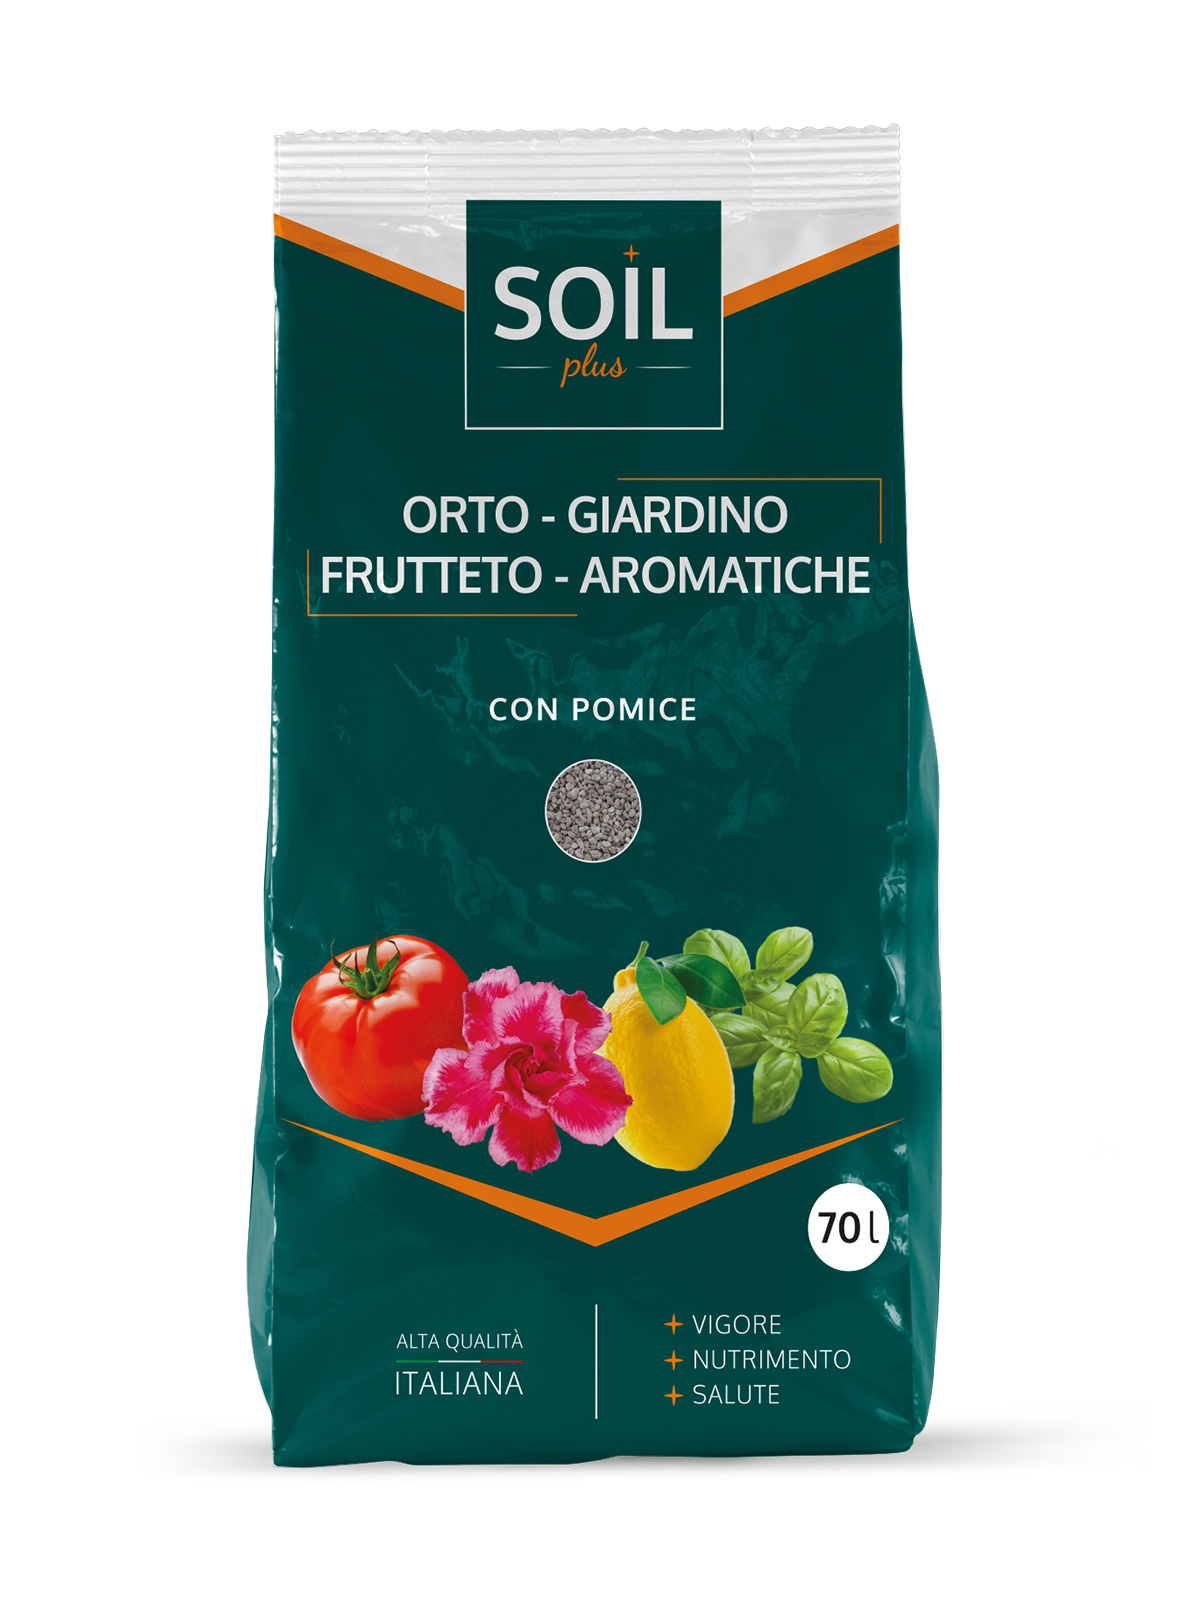 soil-plus-orto-giardino-frutteto-aromatiche